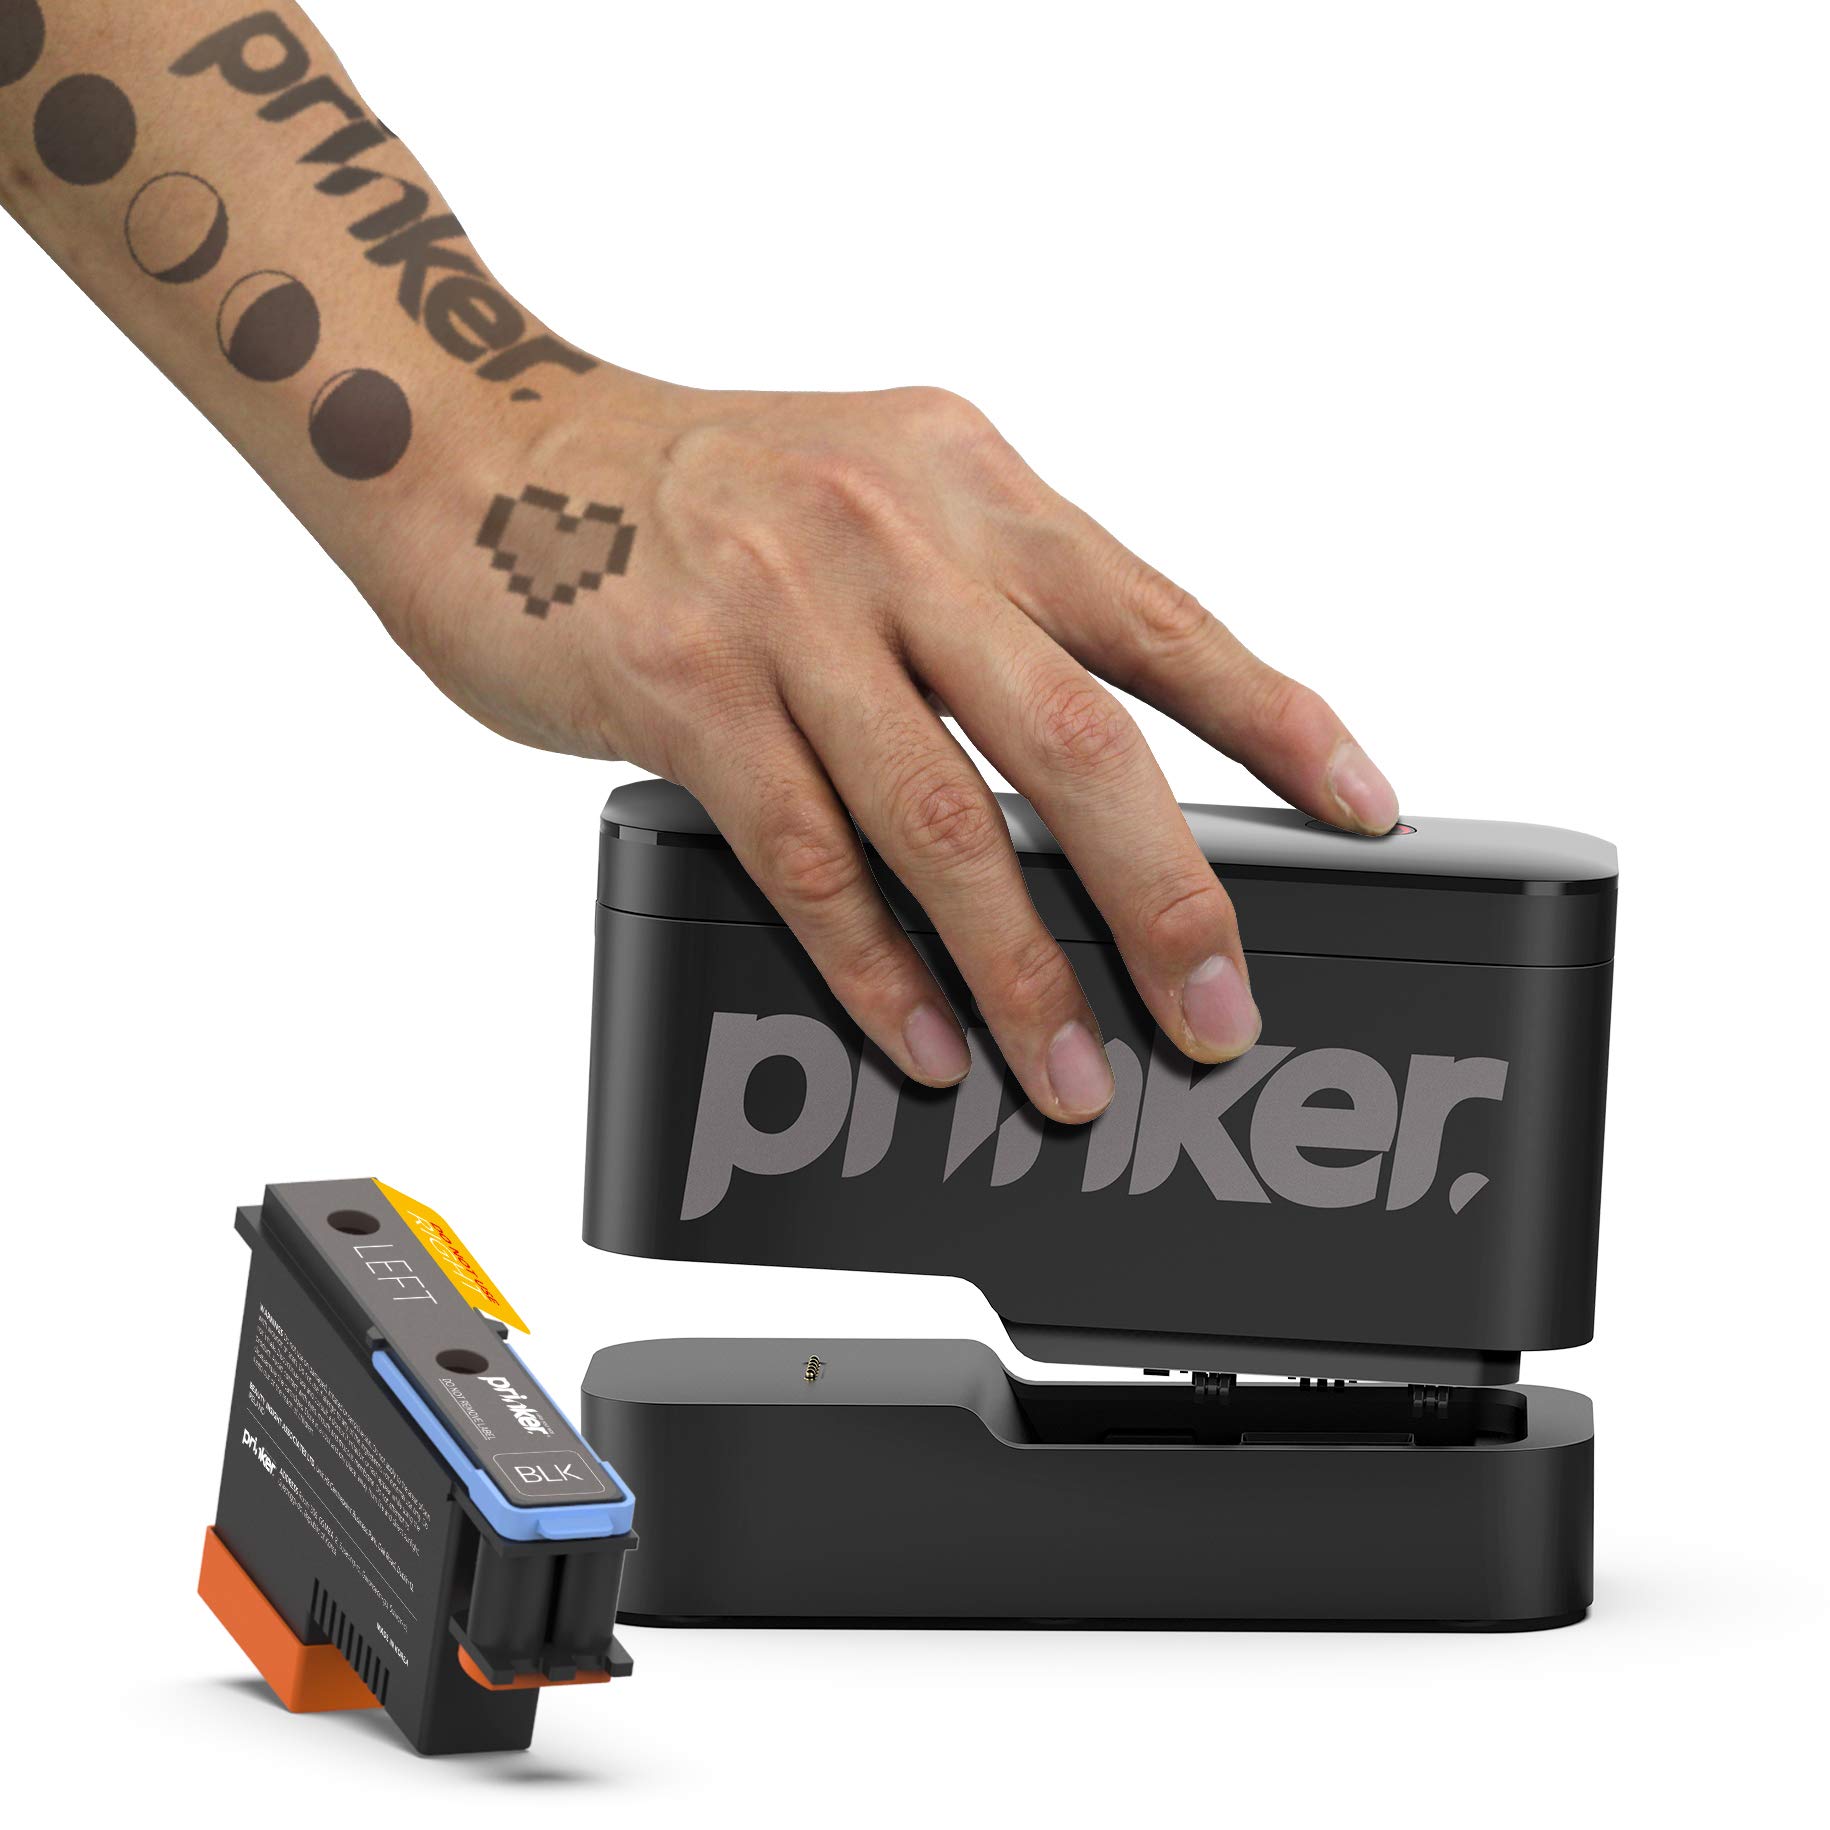 Temporäre Tattoos mit Handheld-Drucker in Sekunden auf der Haut